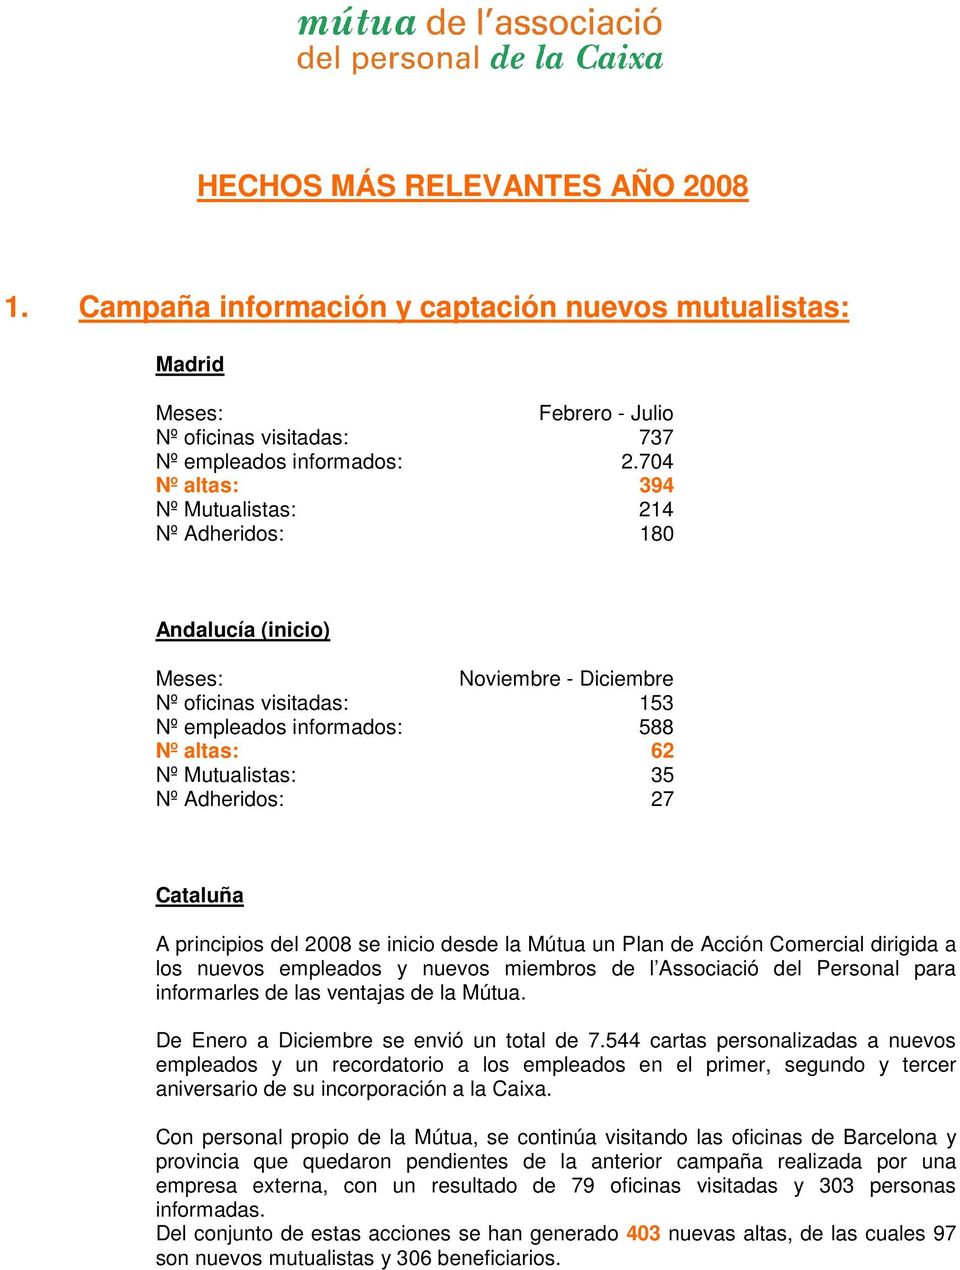 Adheridos: 27 Cataluña A principios del 2008 se inicio desde la Mútua un Plan de Acción Comercial dirigida a los nuevos empleados y nuevos miembros de l Associació del Personal para informarles de